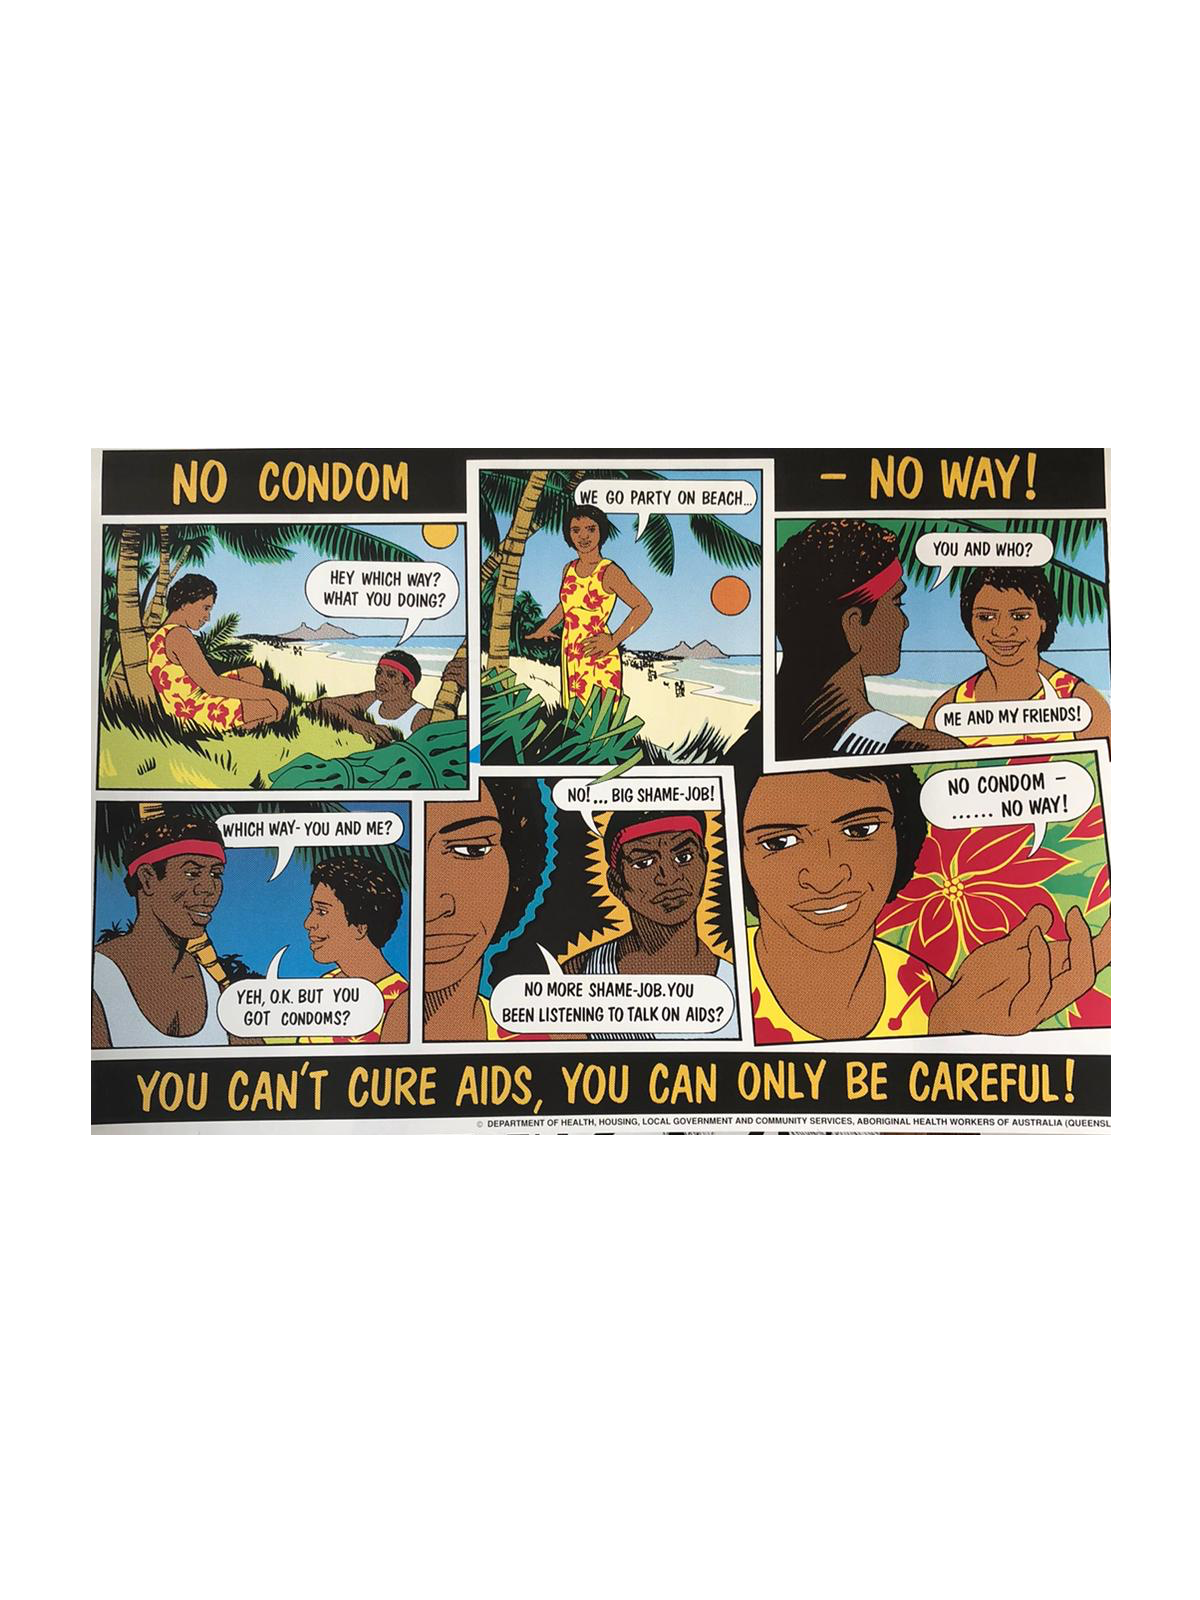 'No condom, no way' Campaign Poster by Stephen Lees